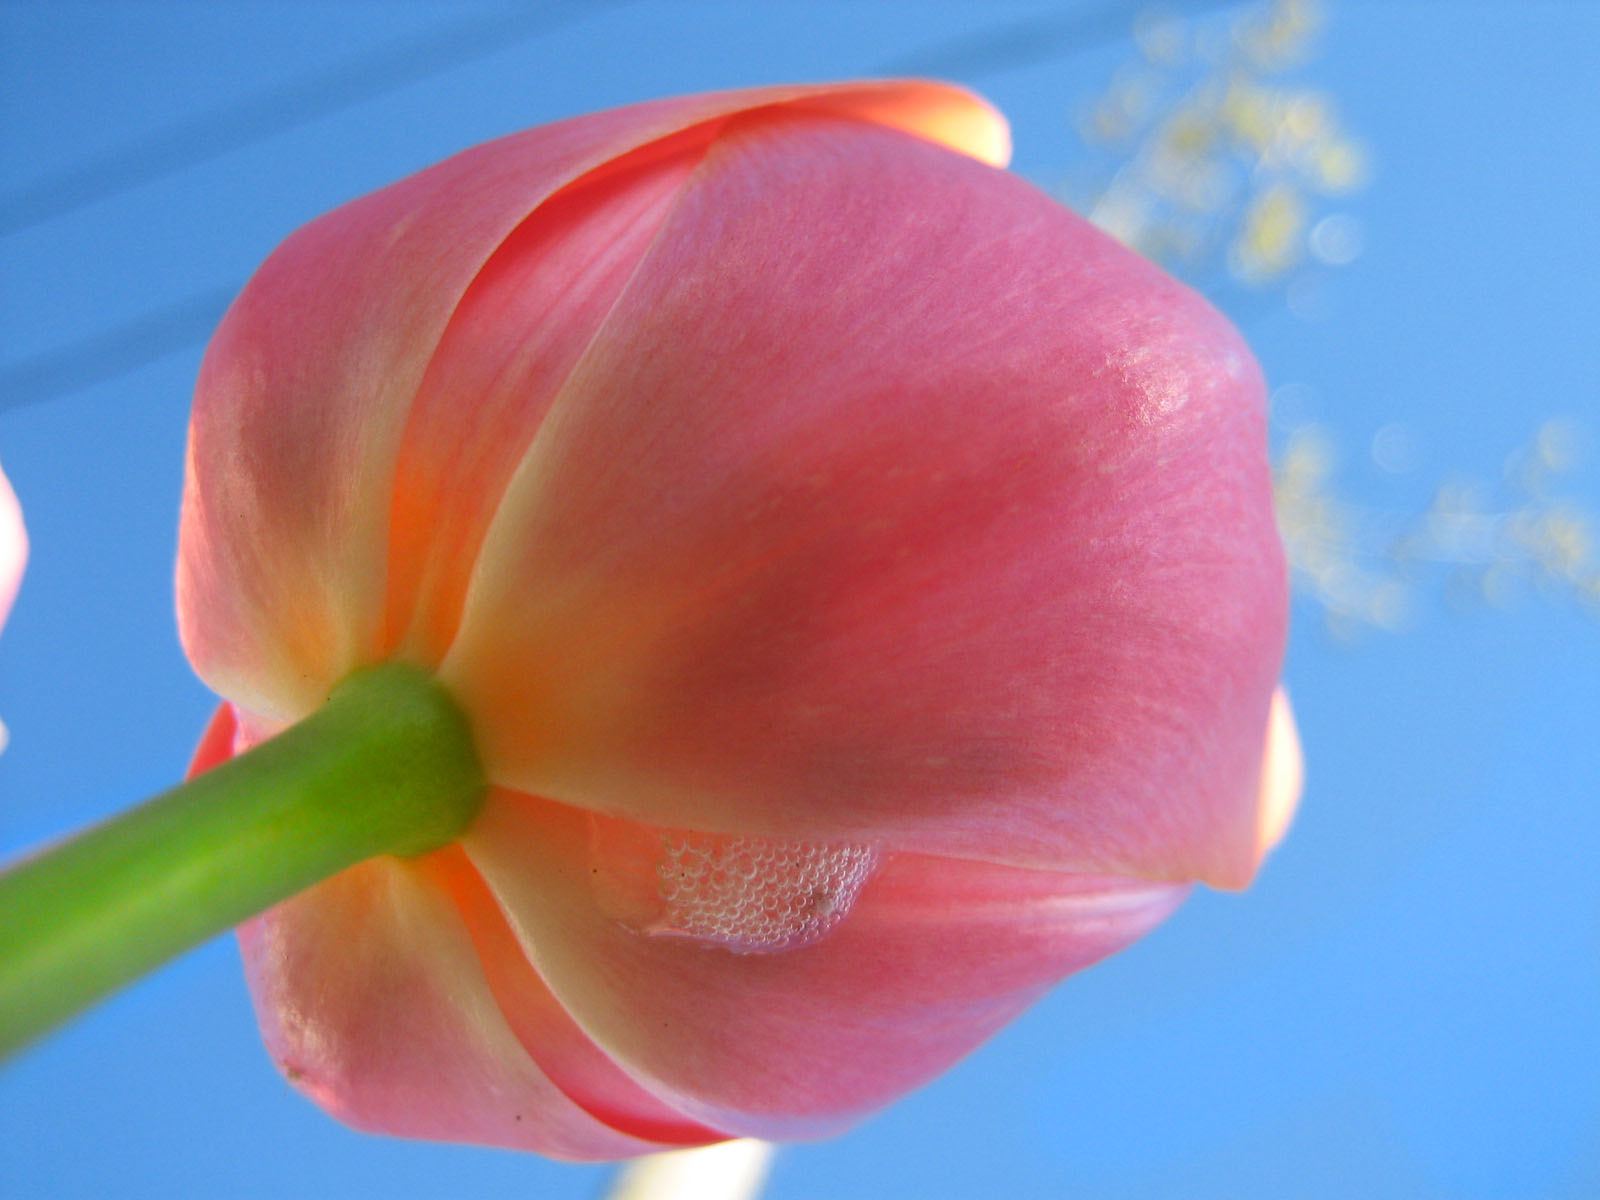 00361 tulip2005